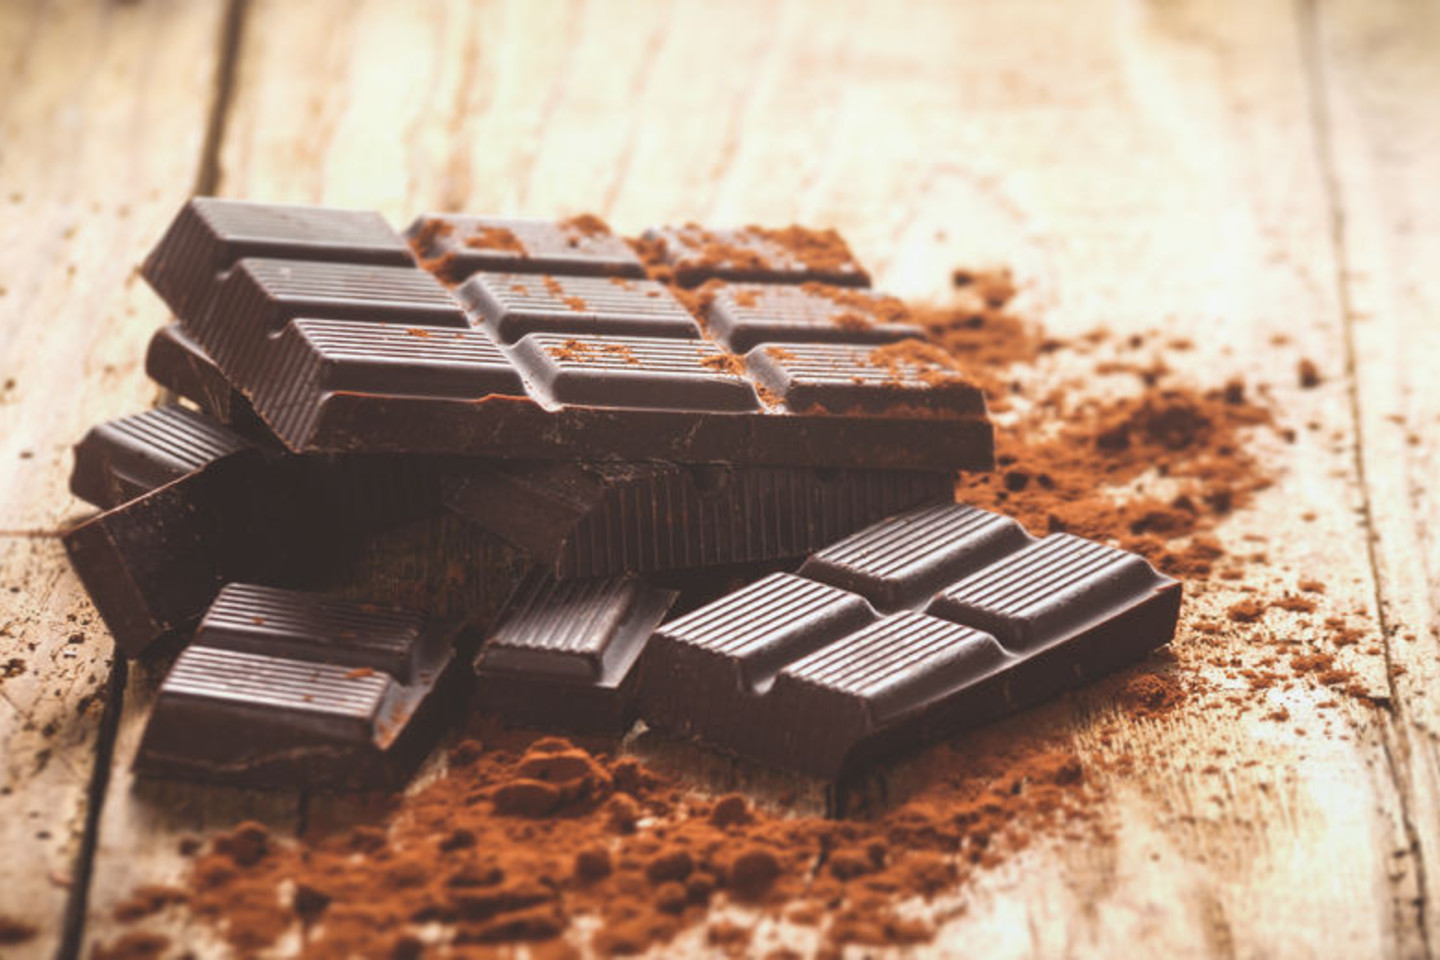 Juodasis šokoladas yra vienas didžiausių nuotaikos gerintojų.<br>123rf nuotr.